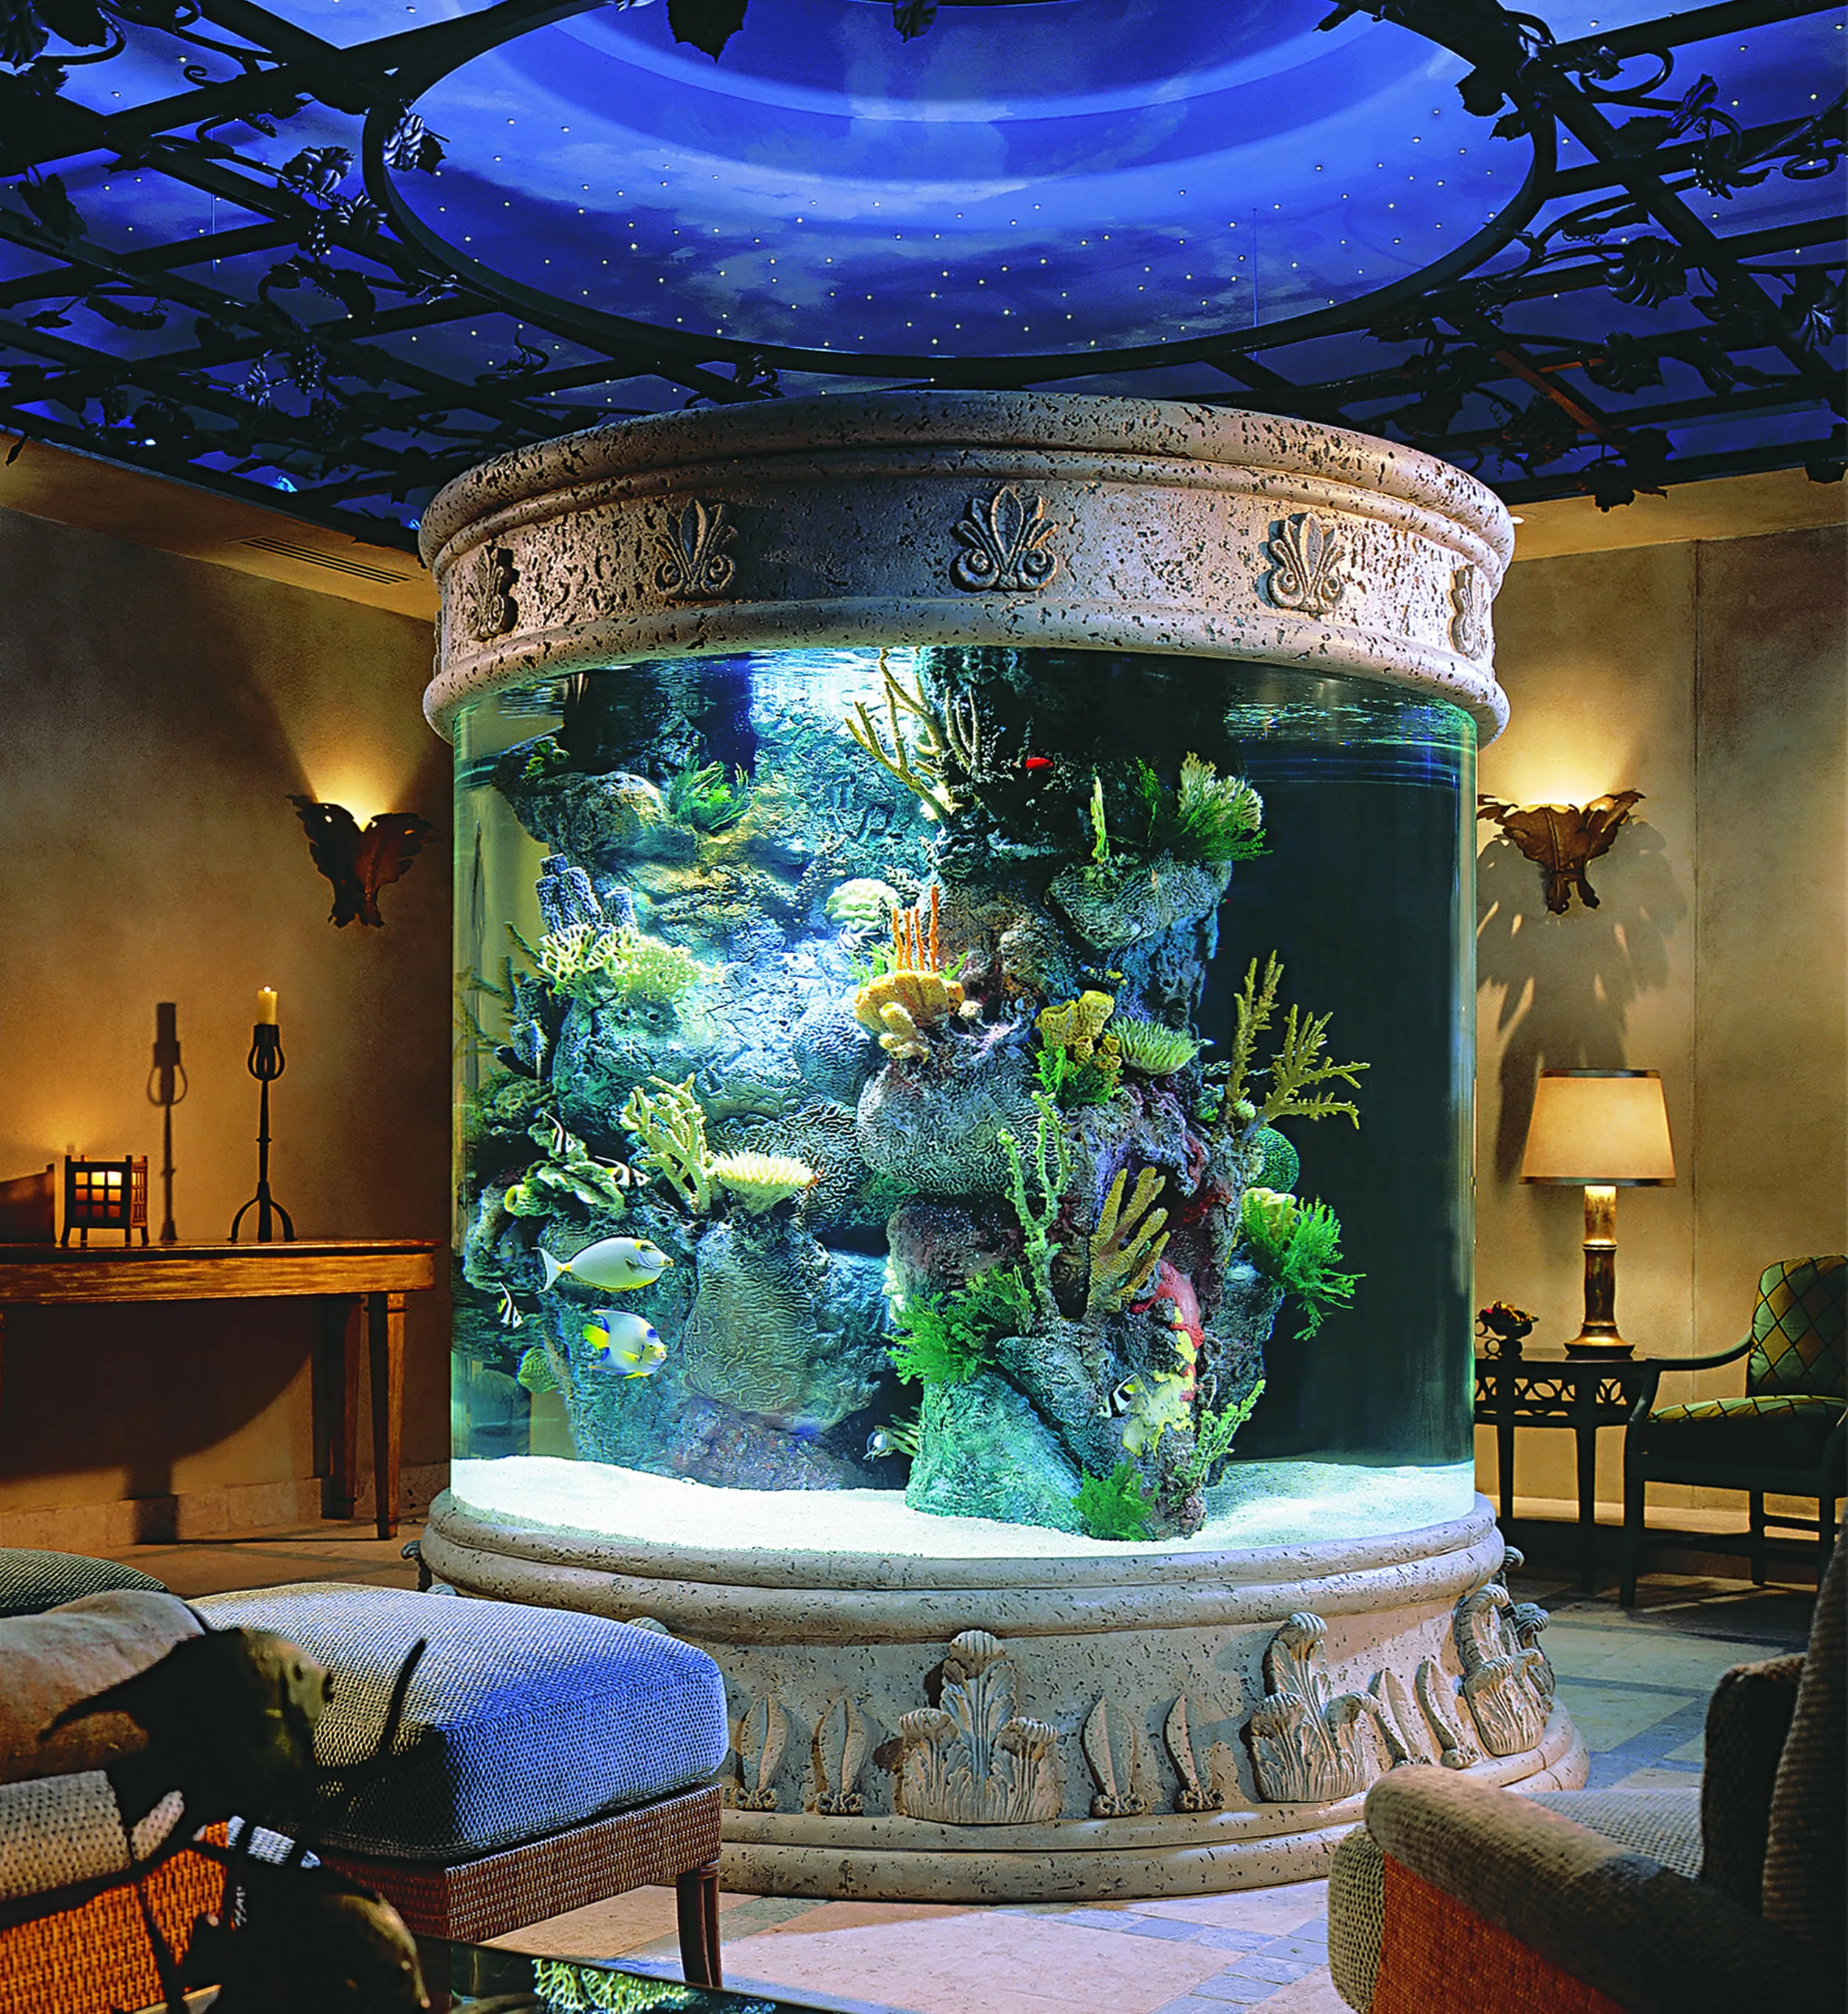 красивый интерьер с аквариумом